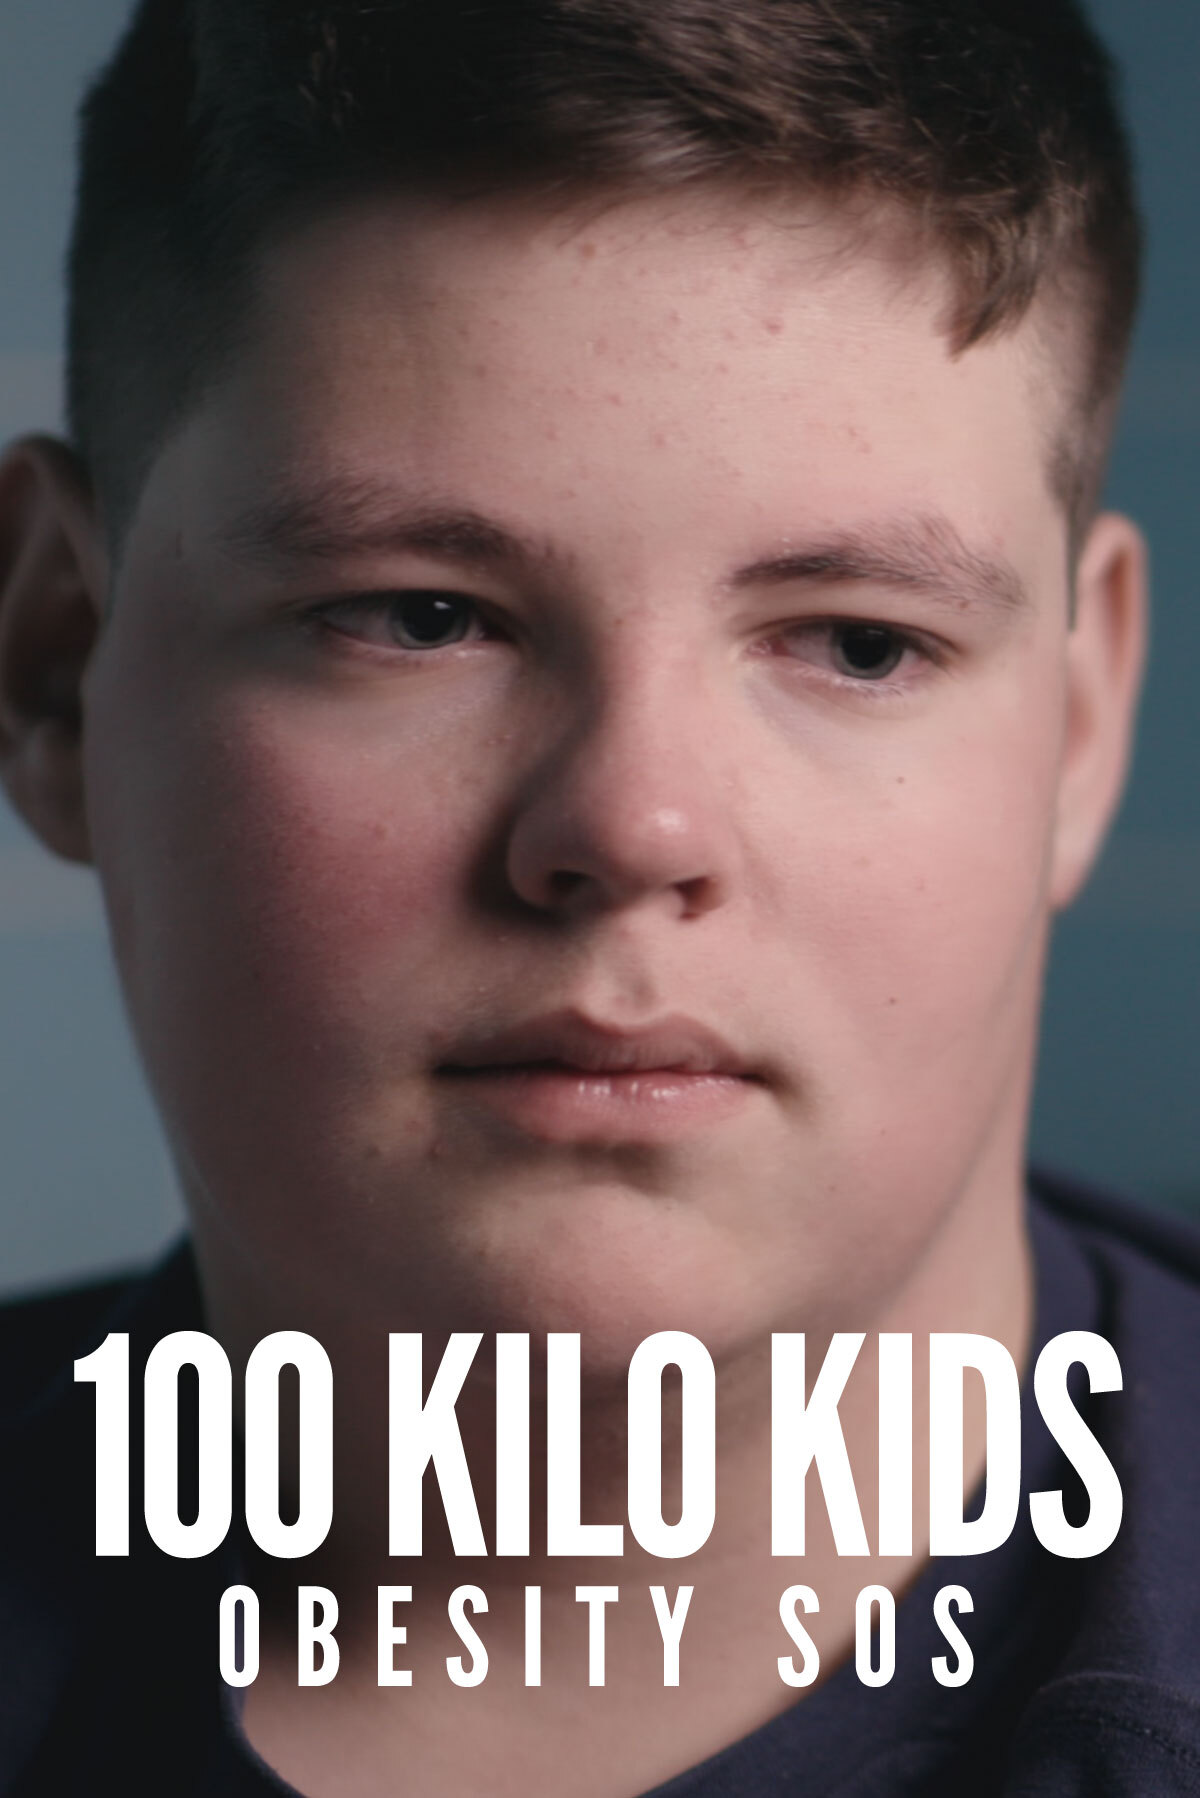 100 Kilo Kids: Obesity SOS